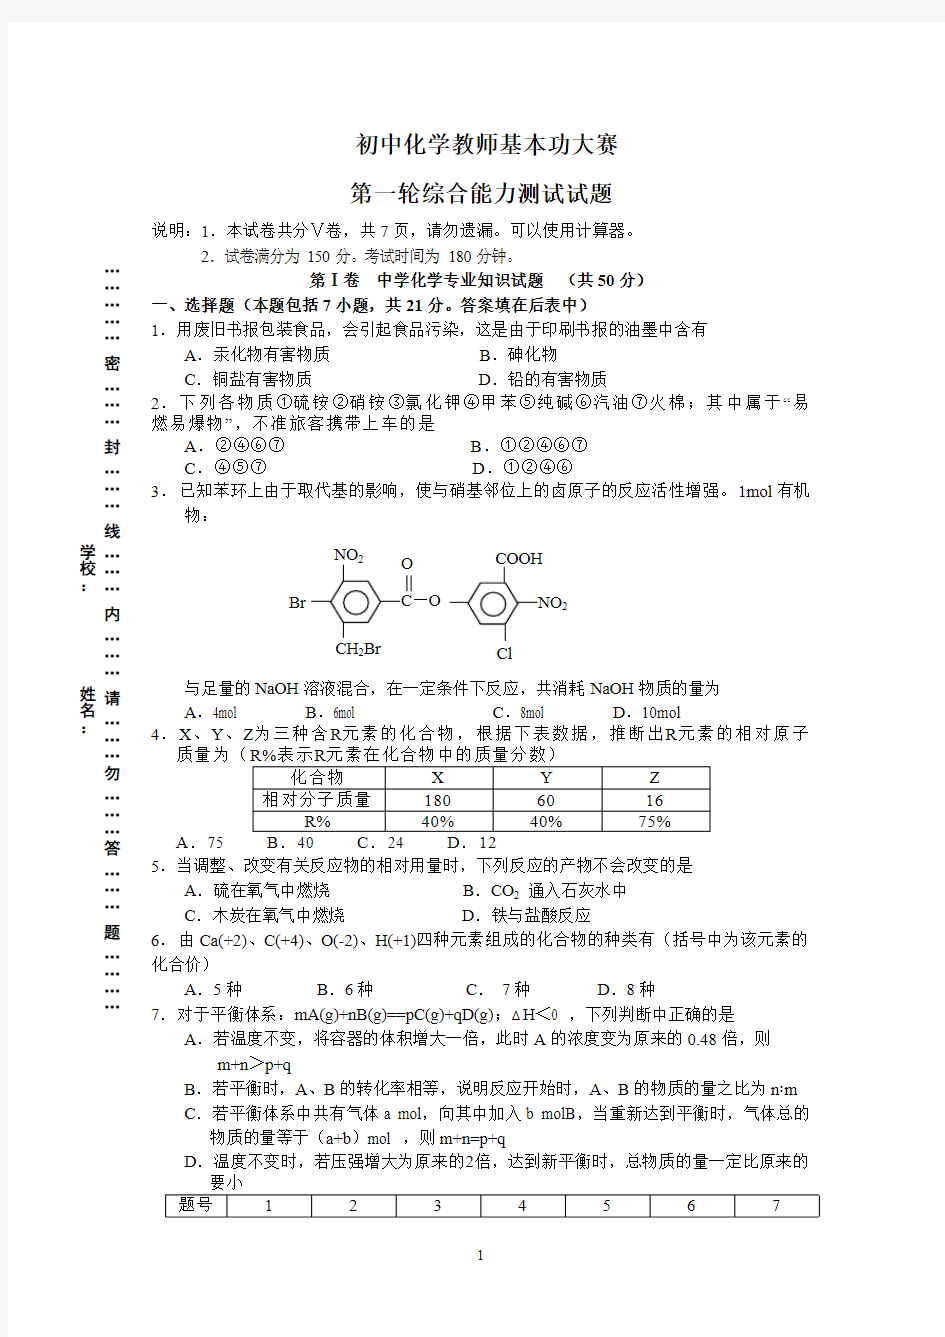 江苏省初中化学教师基本功大赛 综合能力测试试题